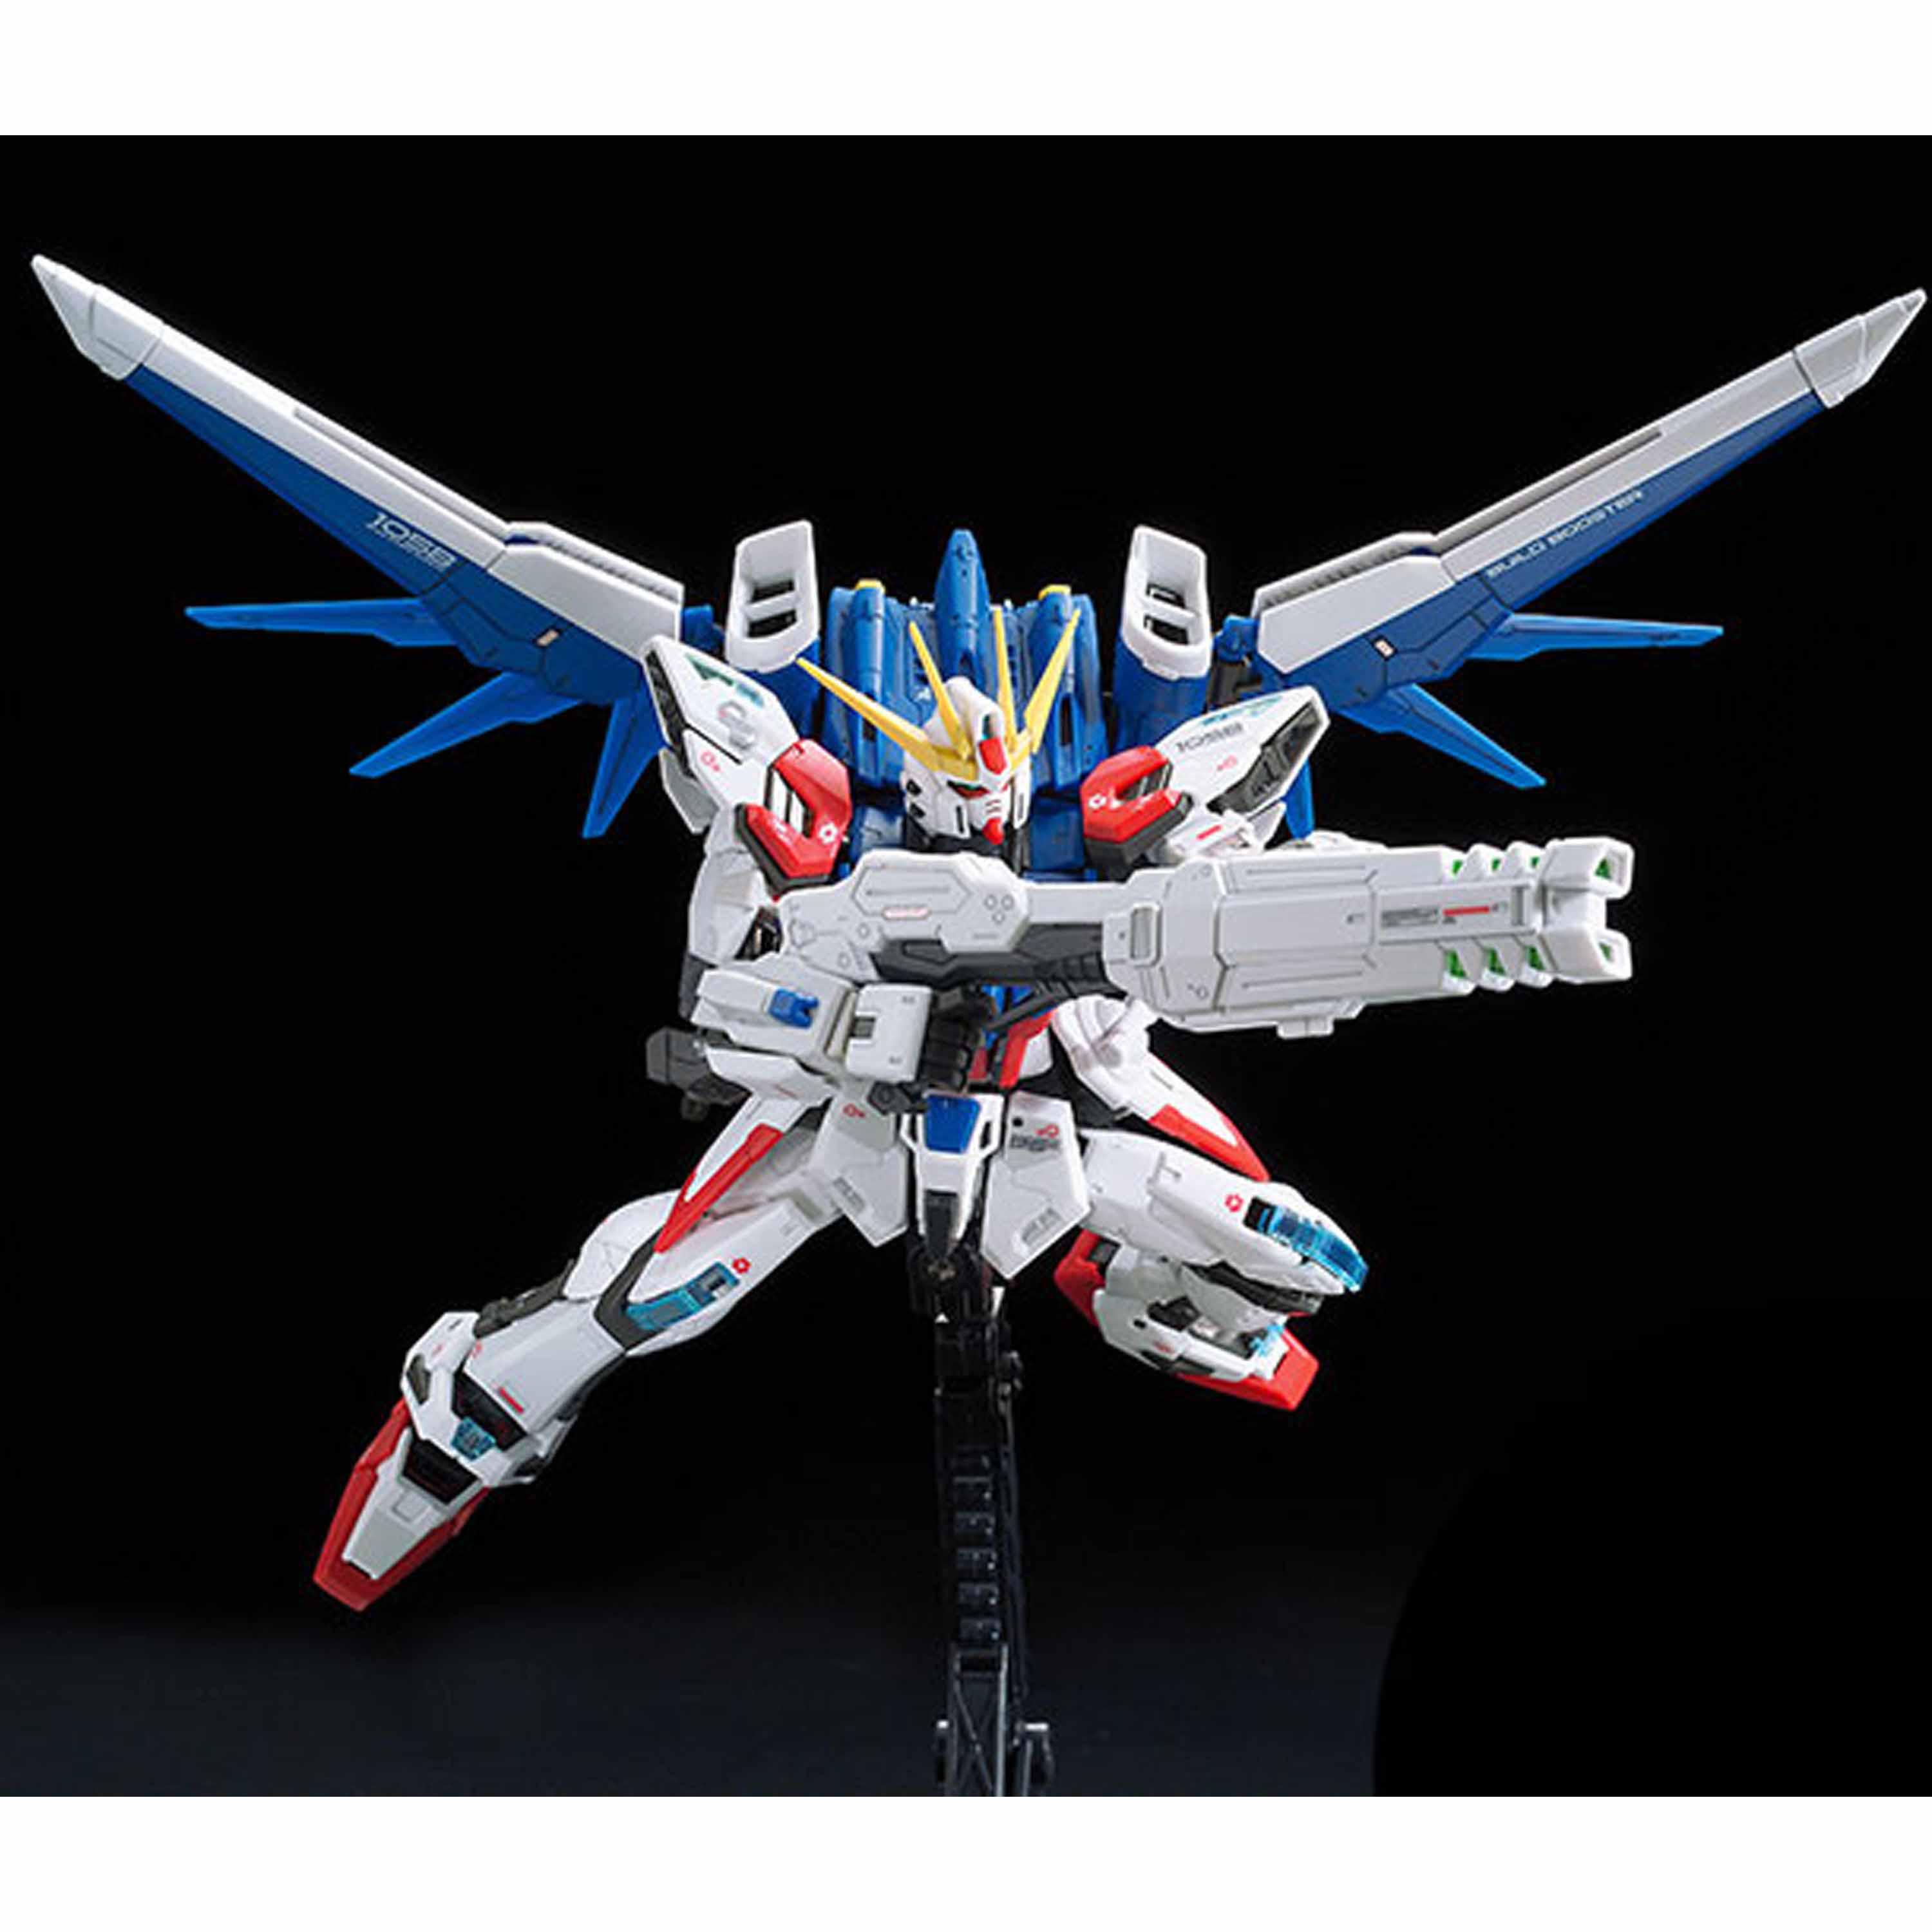 RG GAT-X105B/FP Build Strike Gundam Full Package